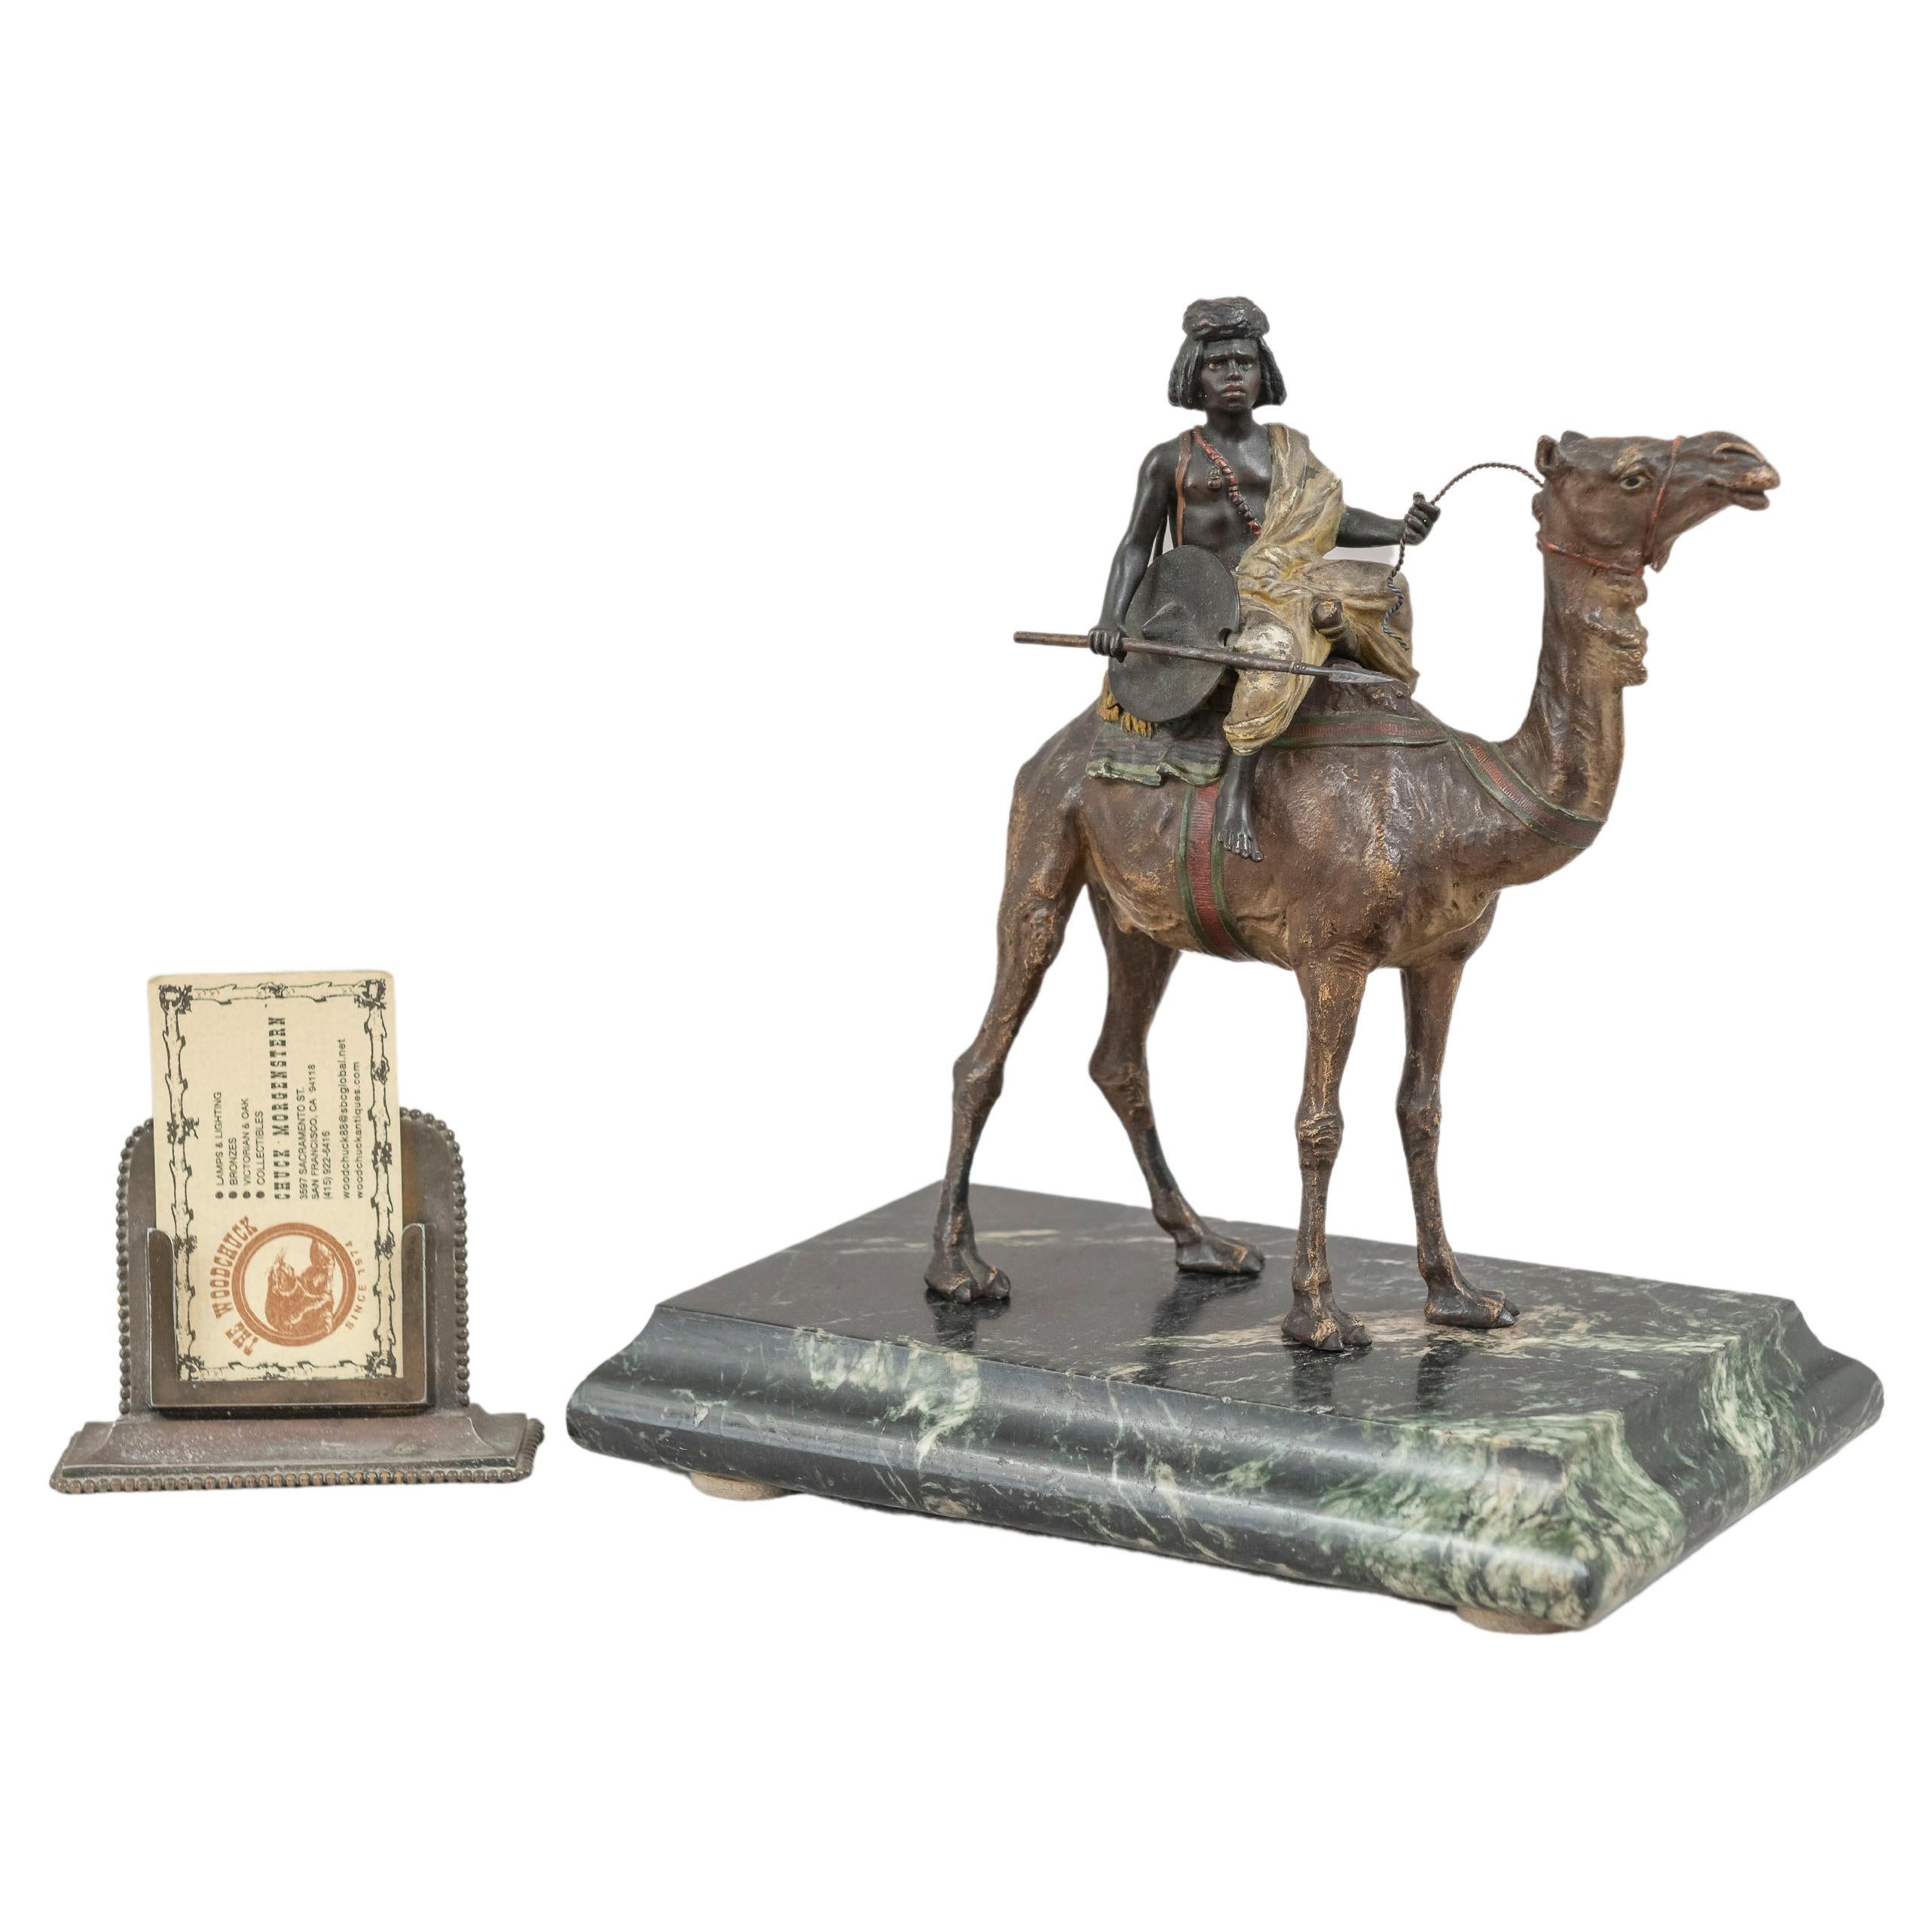 Orientalist Cold Painted Vienna Bronze Boy on Camel by Franz Bergmann, ca. 1900